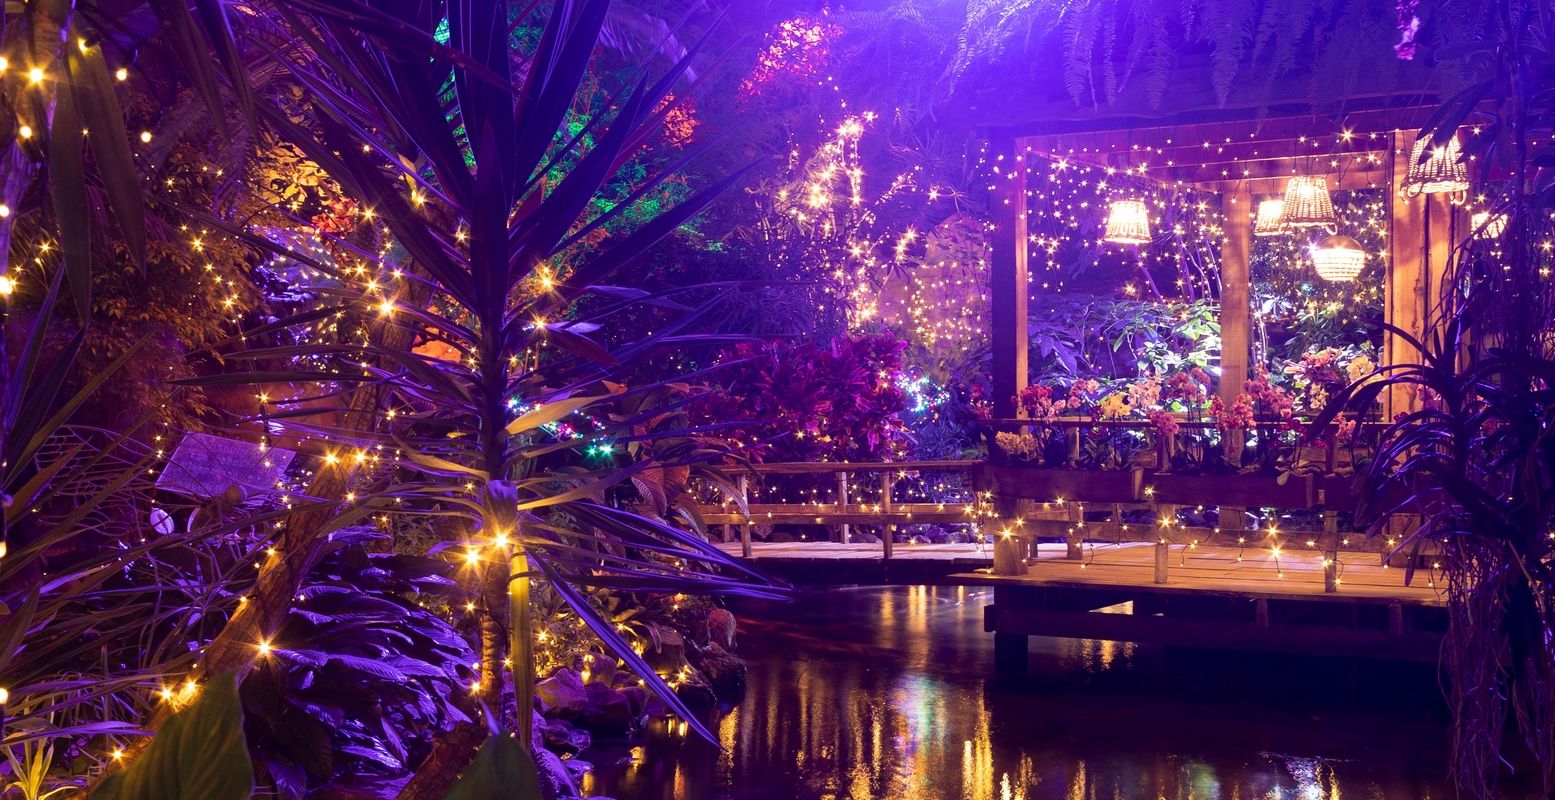 Beleef de kerstsfeer in een jungle, compleet met kerstmarkt. Foto: Junglepark de Orchideeën Hoeve